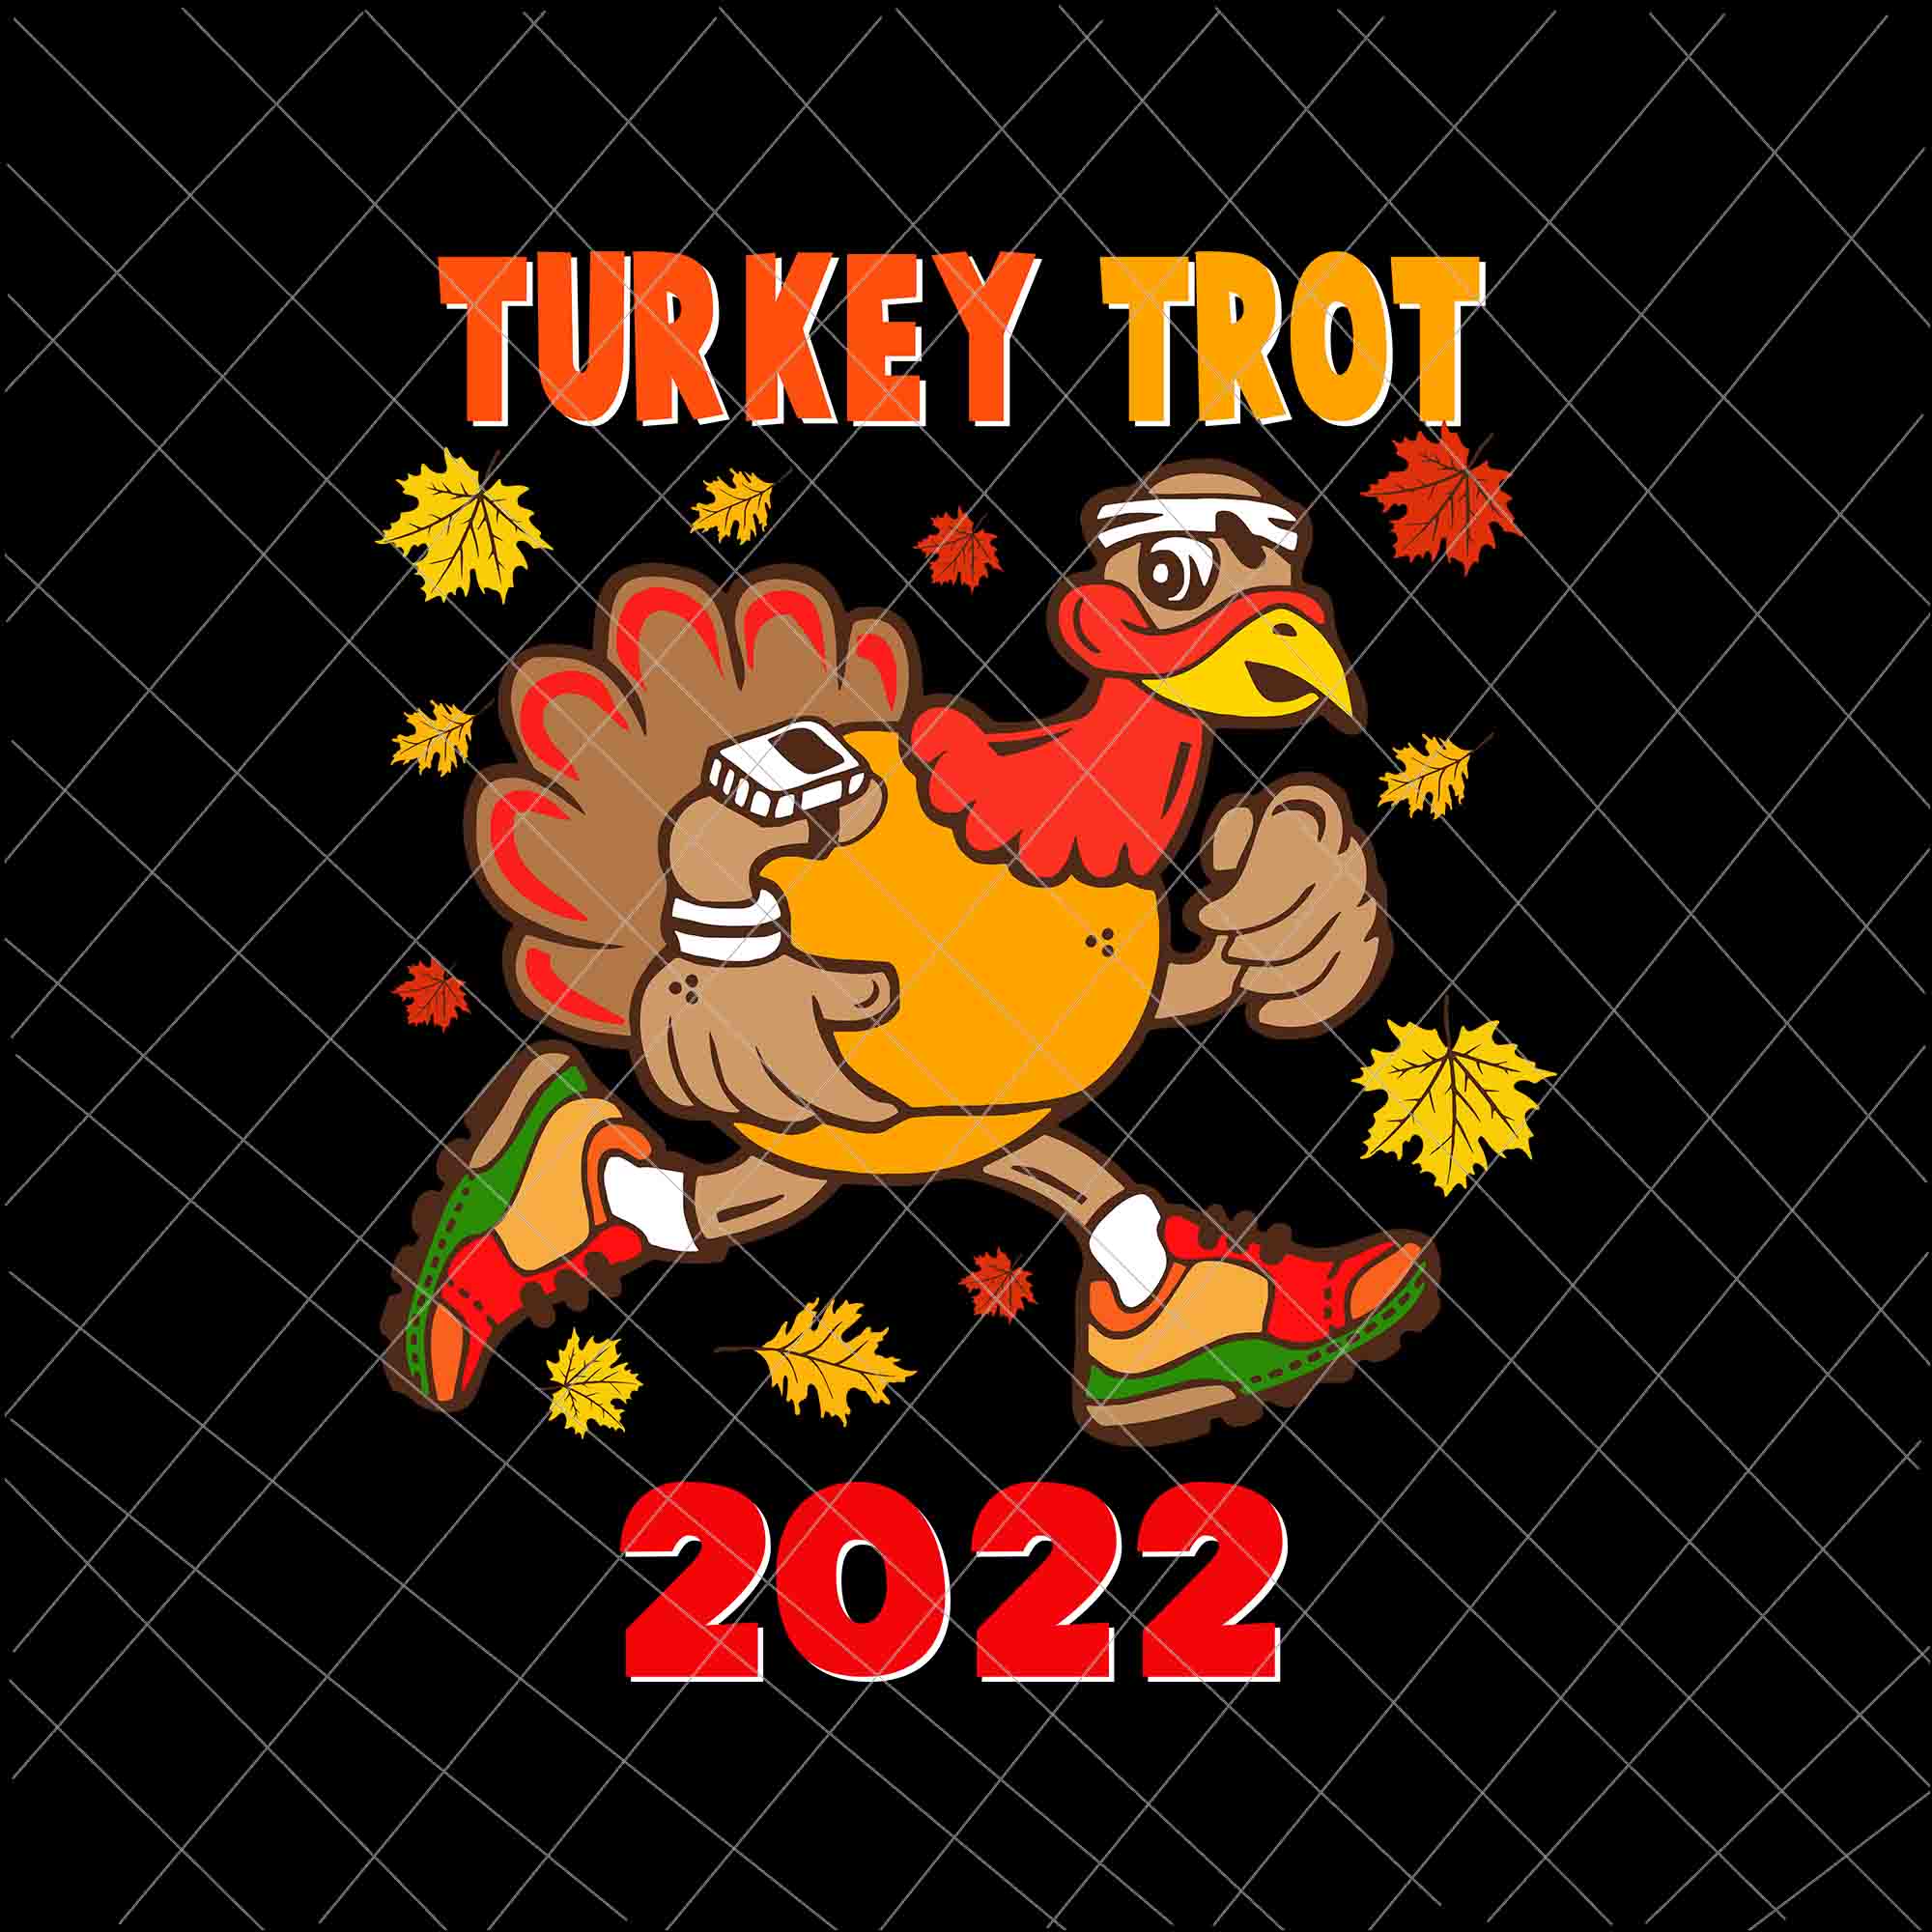 Turkey Trot 2022 Svg, Thanksgiving Turkey Running Runner Autumn Svg, Thanksgiving Turkey Svg, Turkey Running Svg